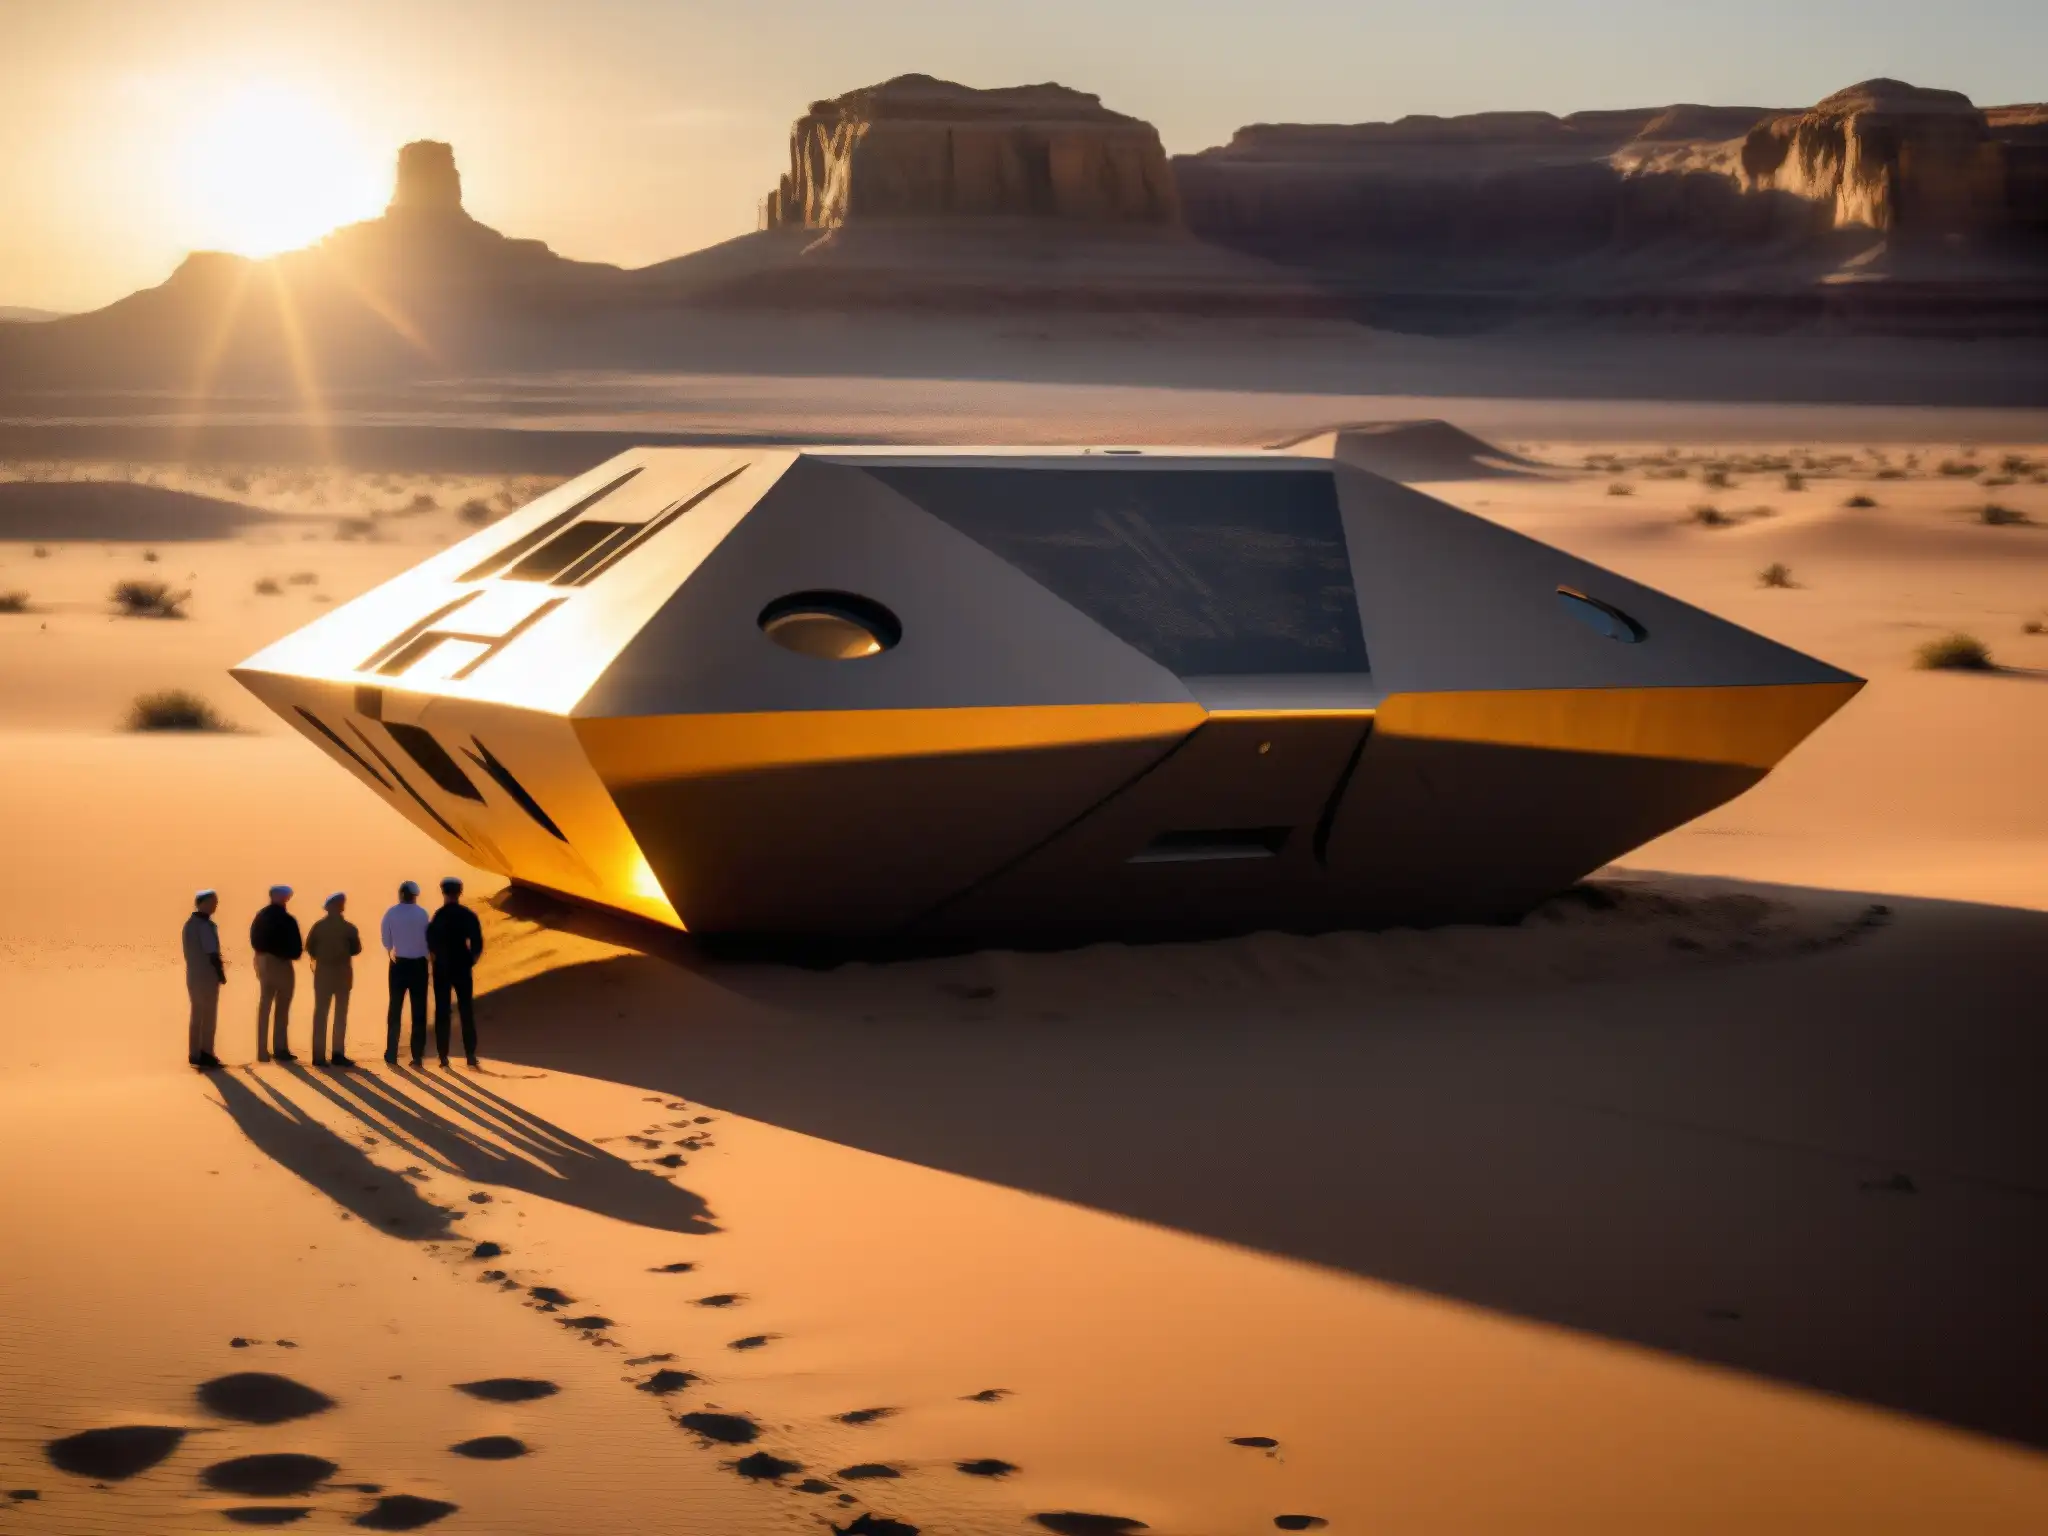 Grupo de científicos y autoridades examinan misterioso objeto metálico en desierto al atardecer, revelando contacto extraterrestre públicamente